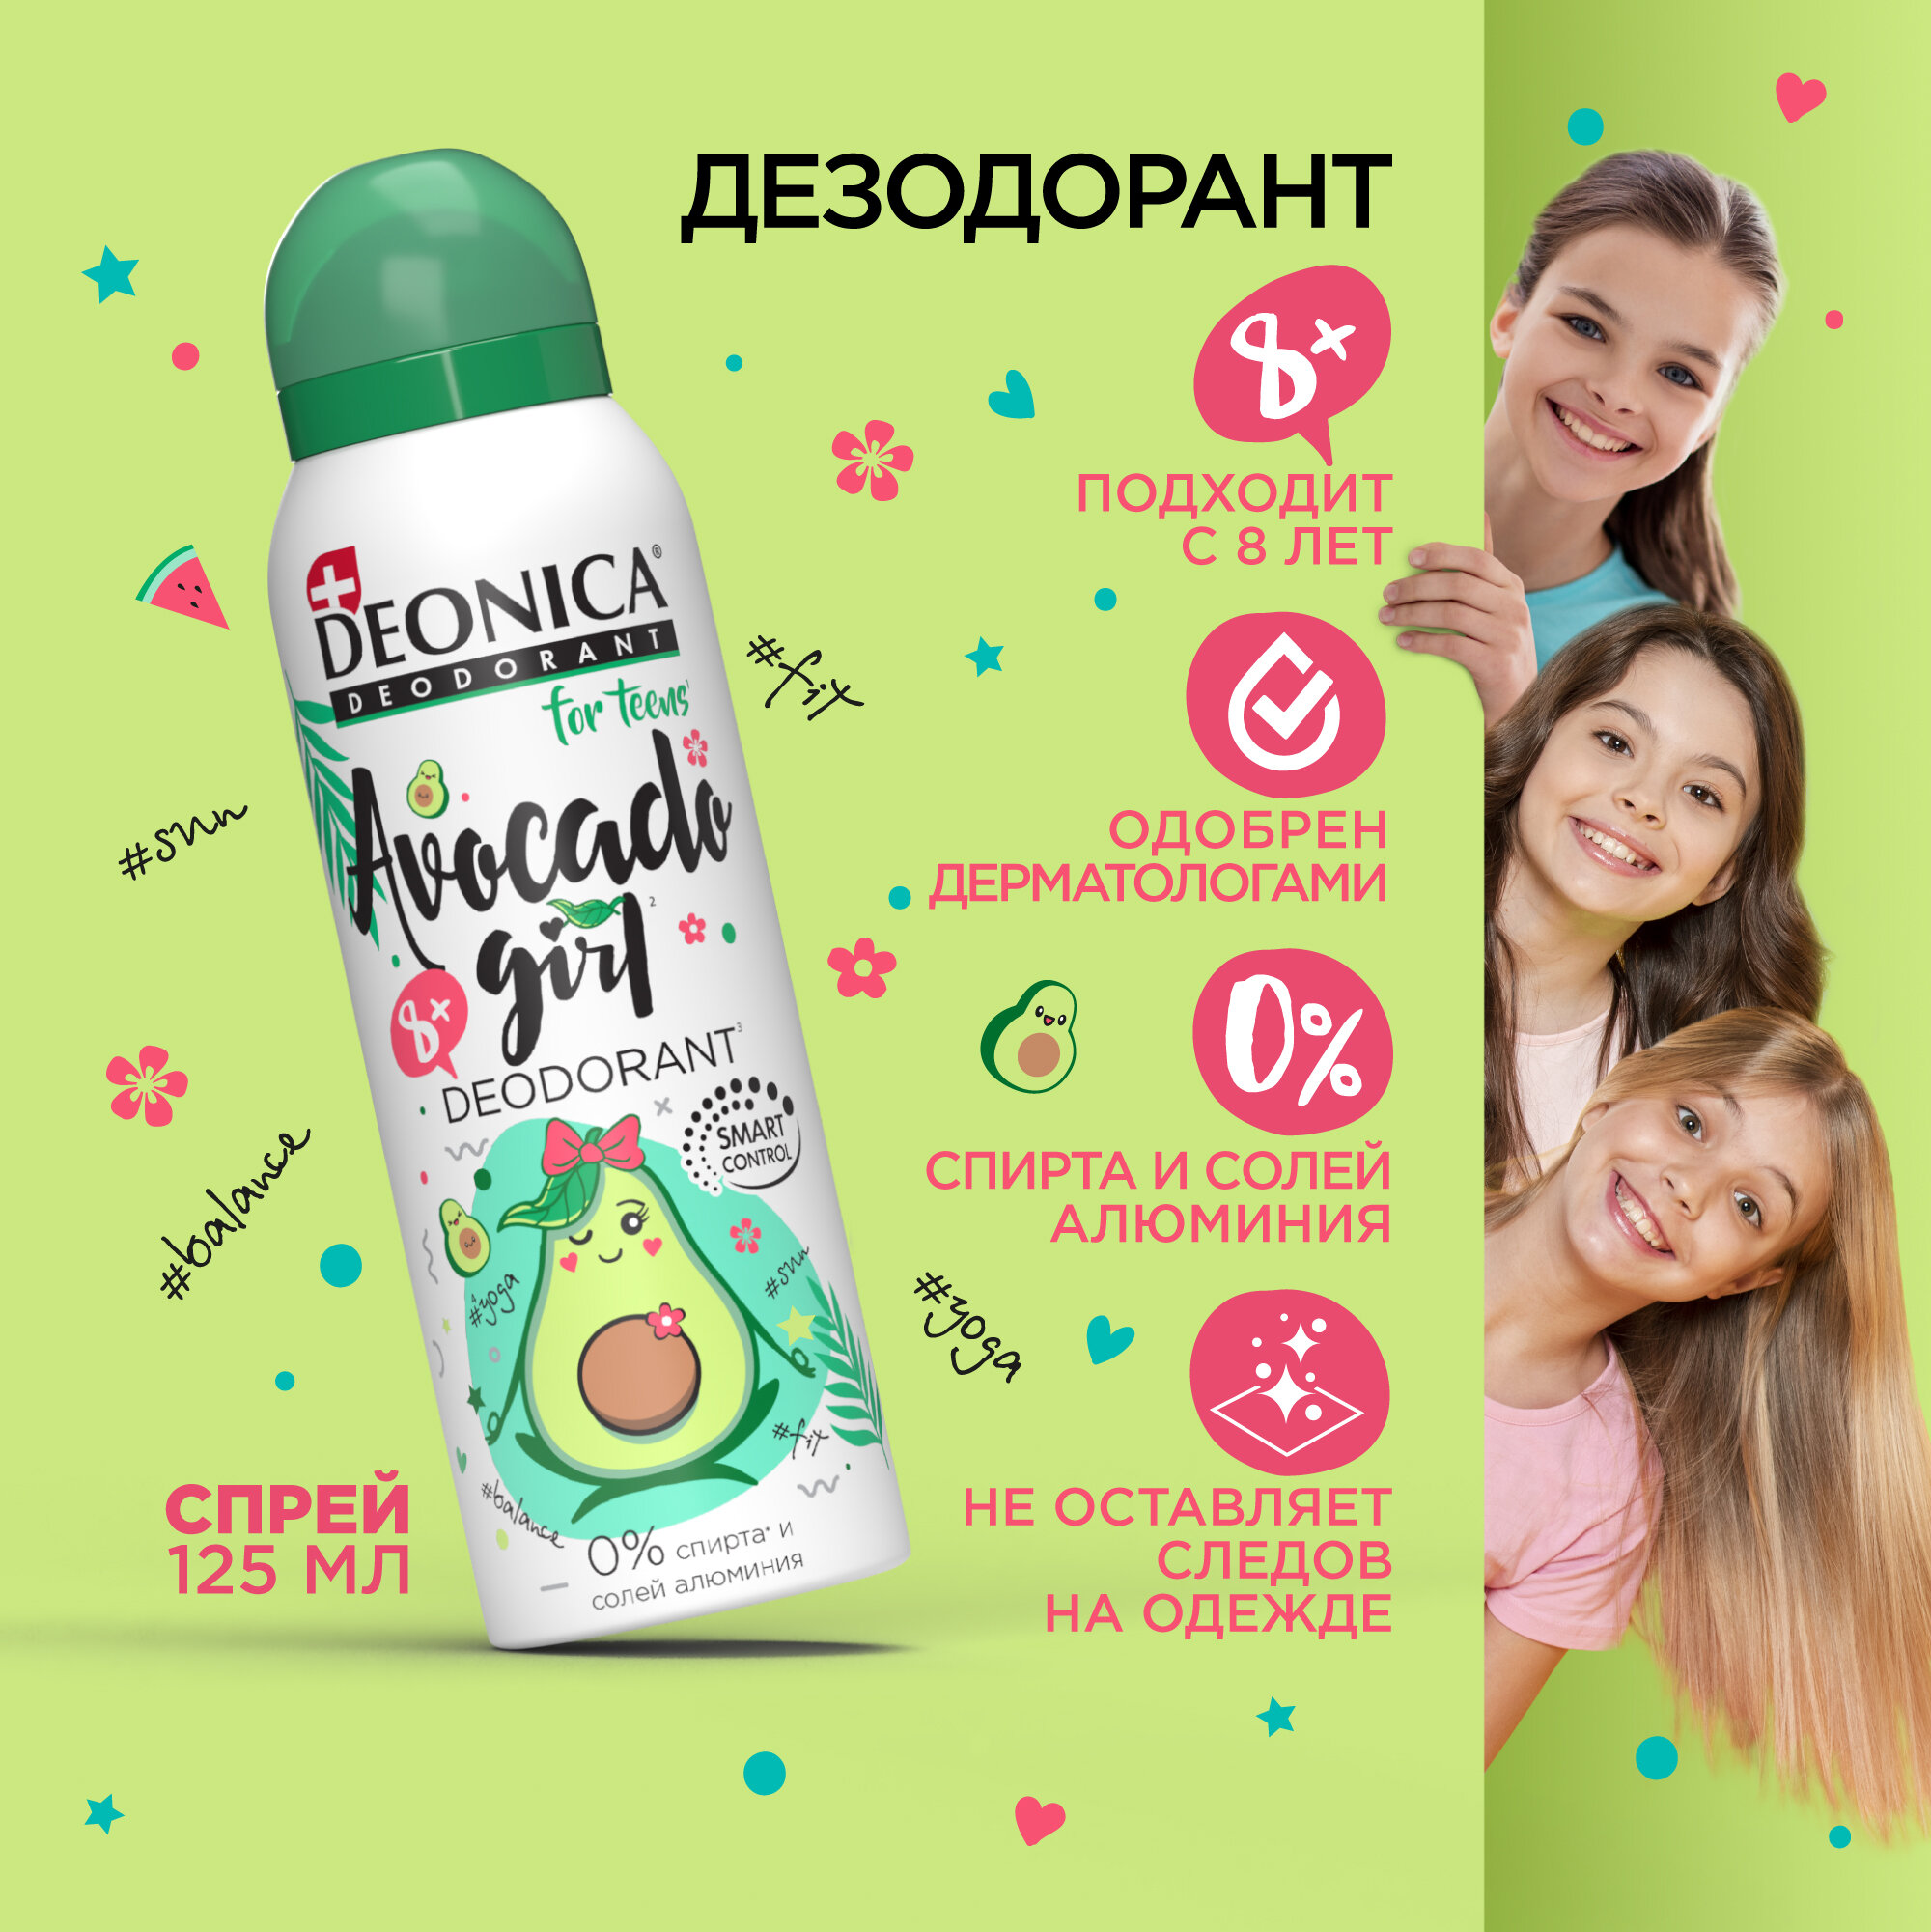 Дезодорант детский Deonica for Teens "Avocado Girl". Спрей,125 мл. Не содержит солей алюминия, спирта, парабенов. Рекомендован детям от 8 до 14 лет